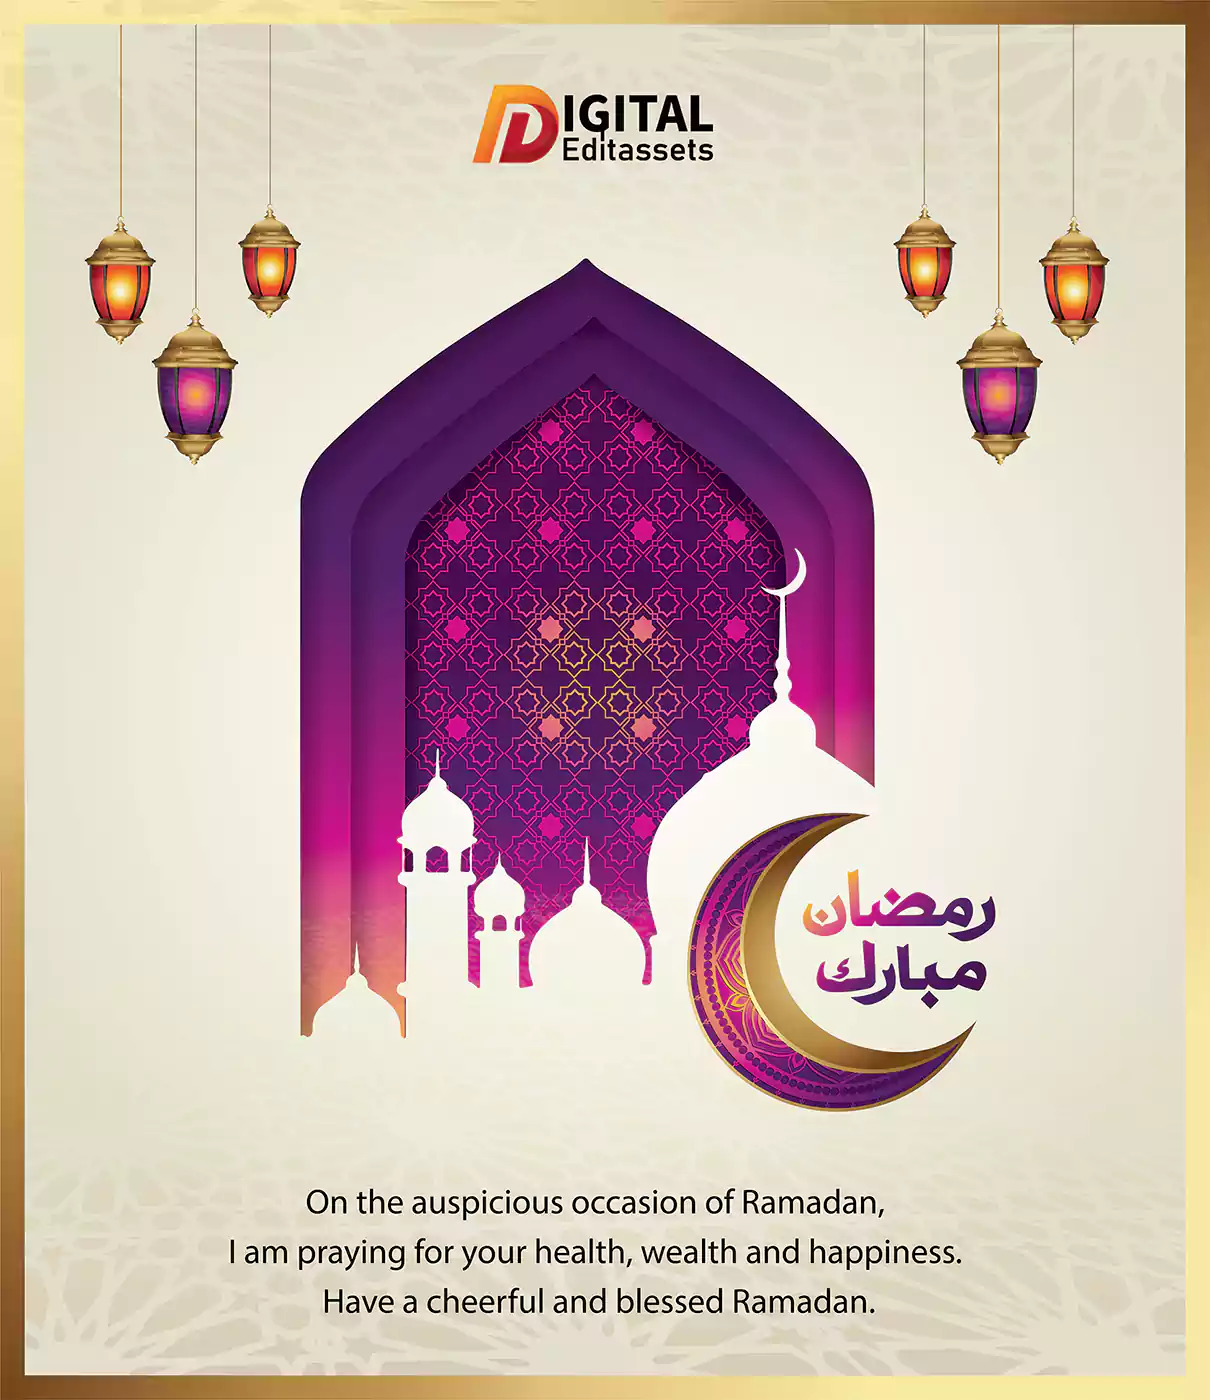 free-ramadan-mubarak-vector-template-for-social-media-posts